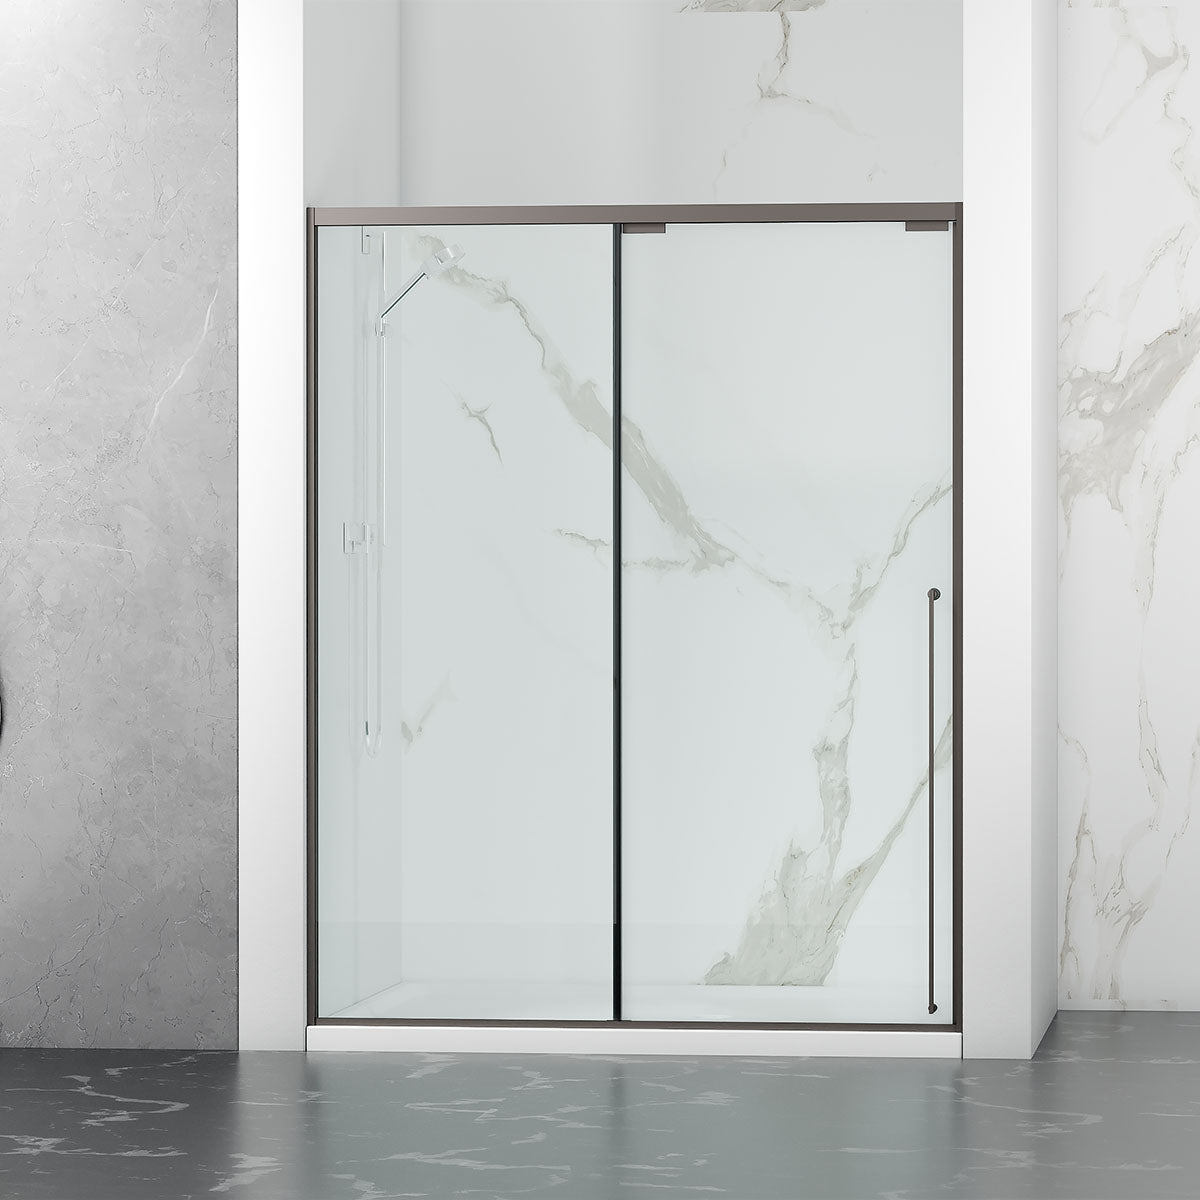 54" Karina Series Minimalist Shower Door with a Single Sliding Door